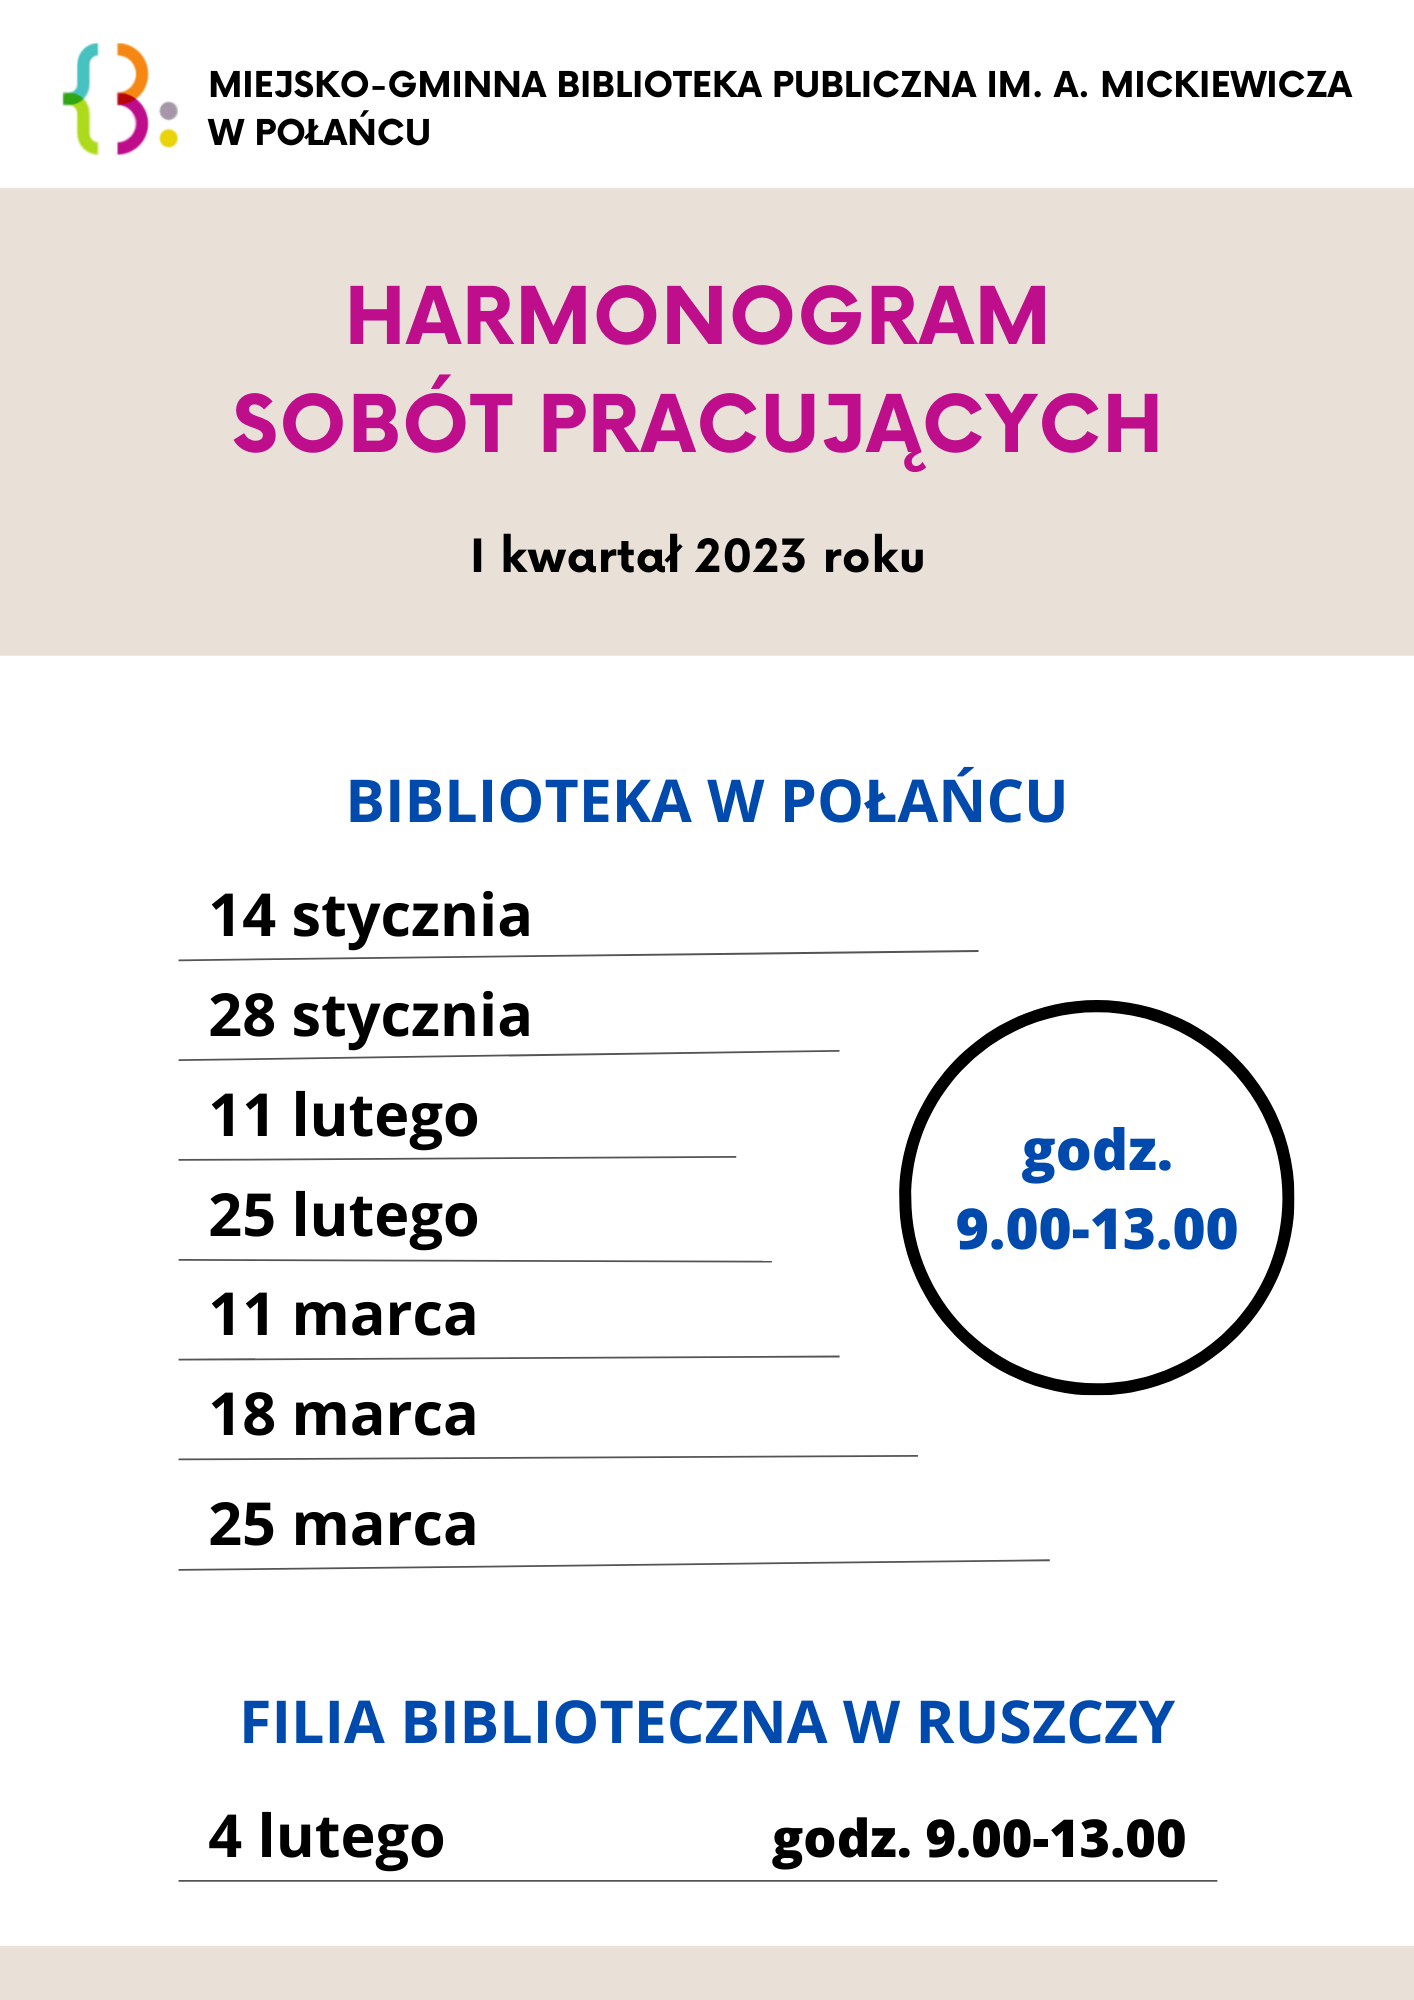 harmonogram_sobót_pracujacych_w_bibliotece_w_połańcu_3.png